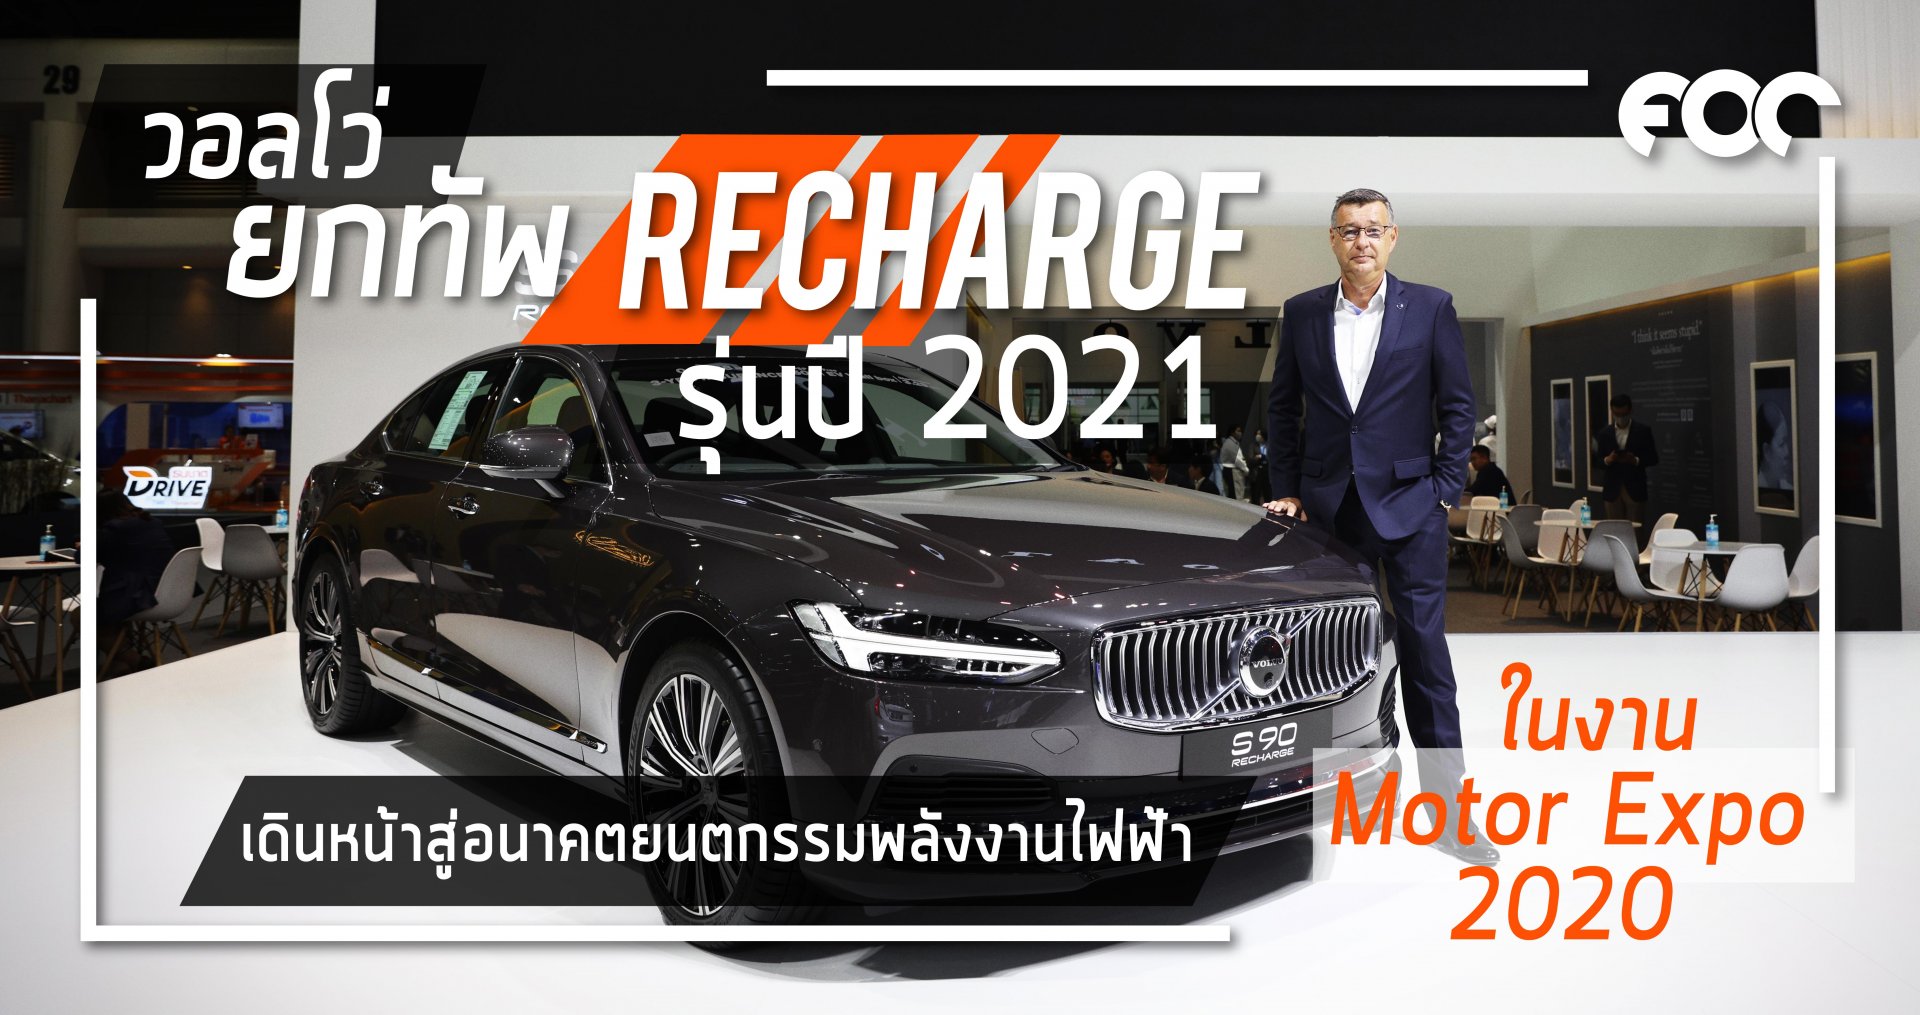 วอลโว่ ยกขบวนรถยนต์ RECHARGE รุ่นปี 2021 เดินหน้าสู่อนาคตแห่งยนตกรรมพลังงานไฟฟ้าเต็มรูปแบบ ในงานไทยแลนด์ อินเตอร์เนชั่นแนล มอเตอร์เอ็กซ์โป ครั้งที่ 37